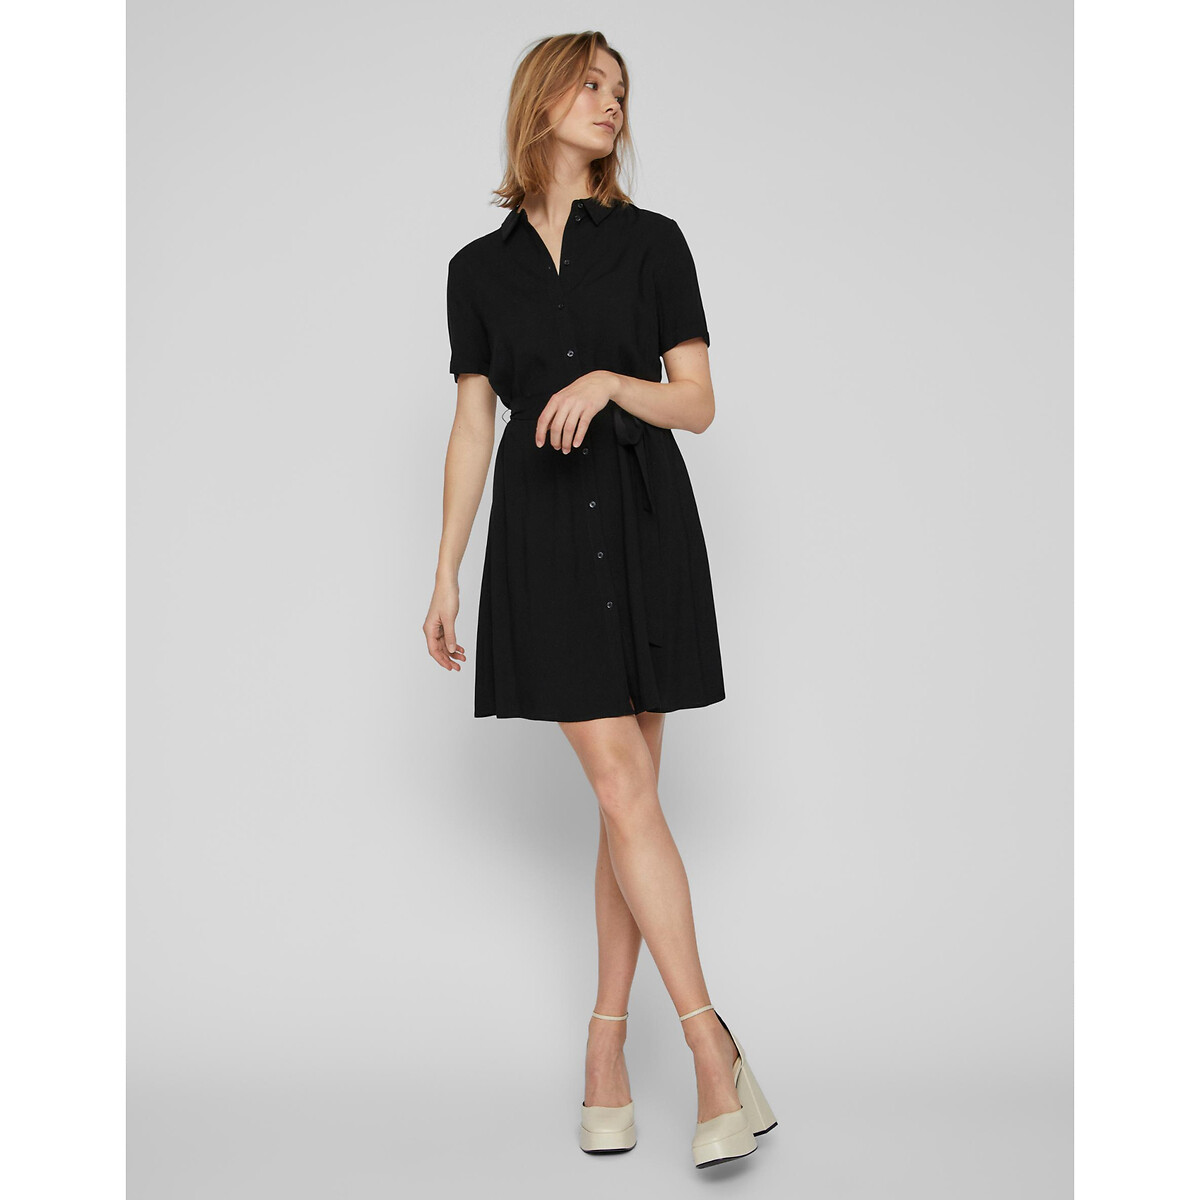 Платье-рубашка Короткие рукава с завязками 48 черный LaRedoute, размер 48 - фото 3